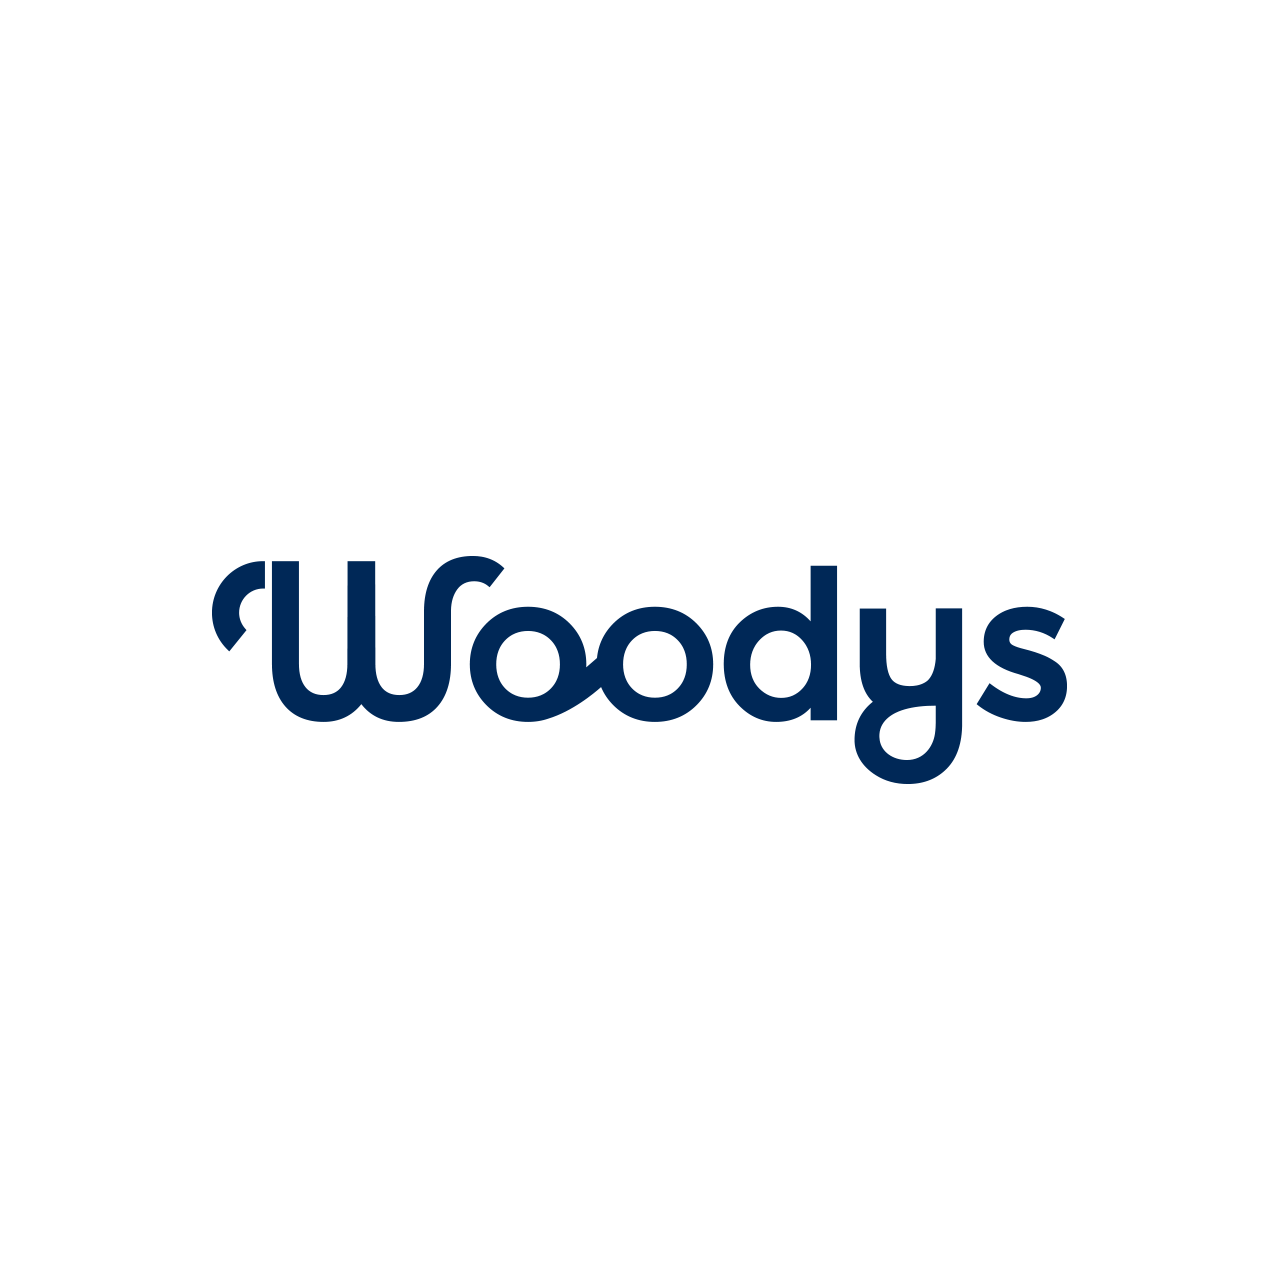 woodys